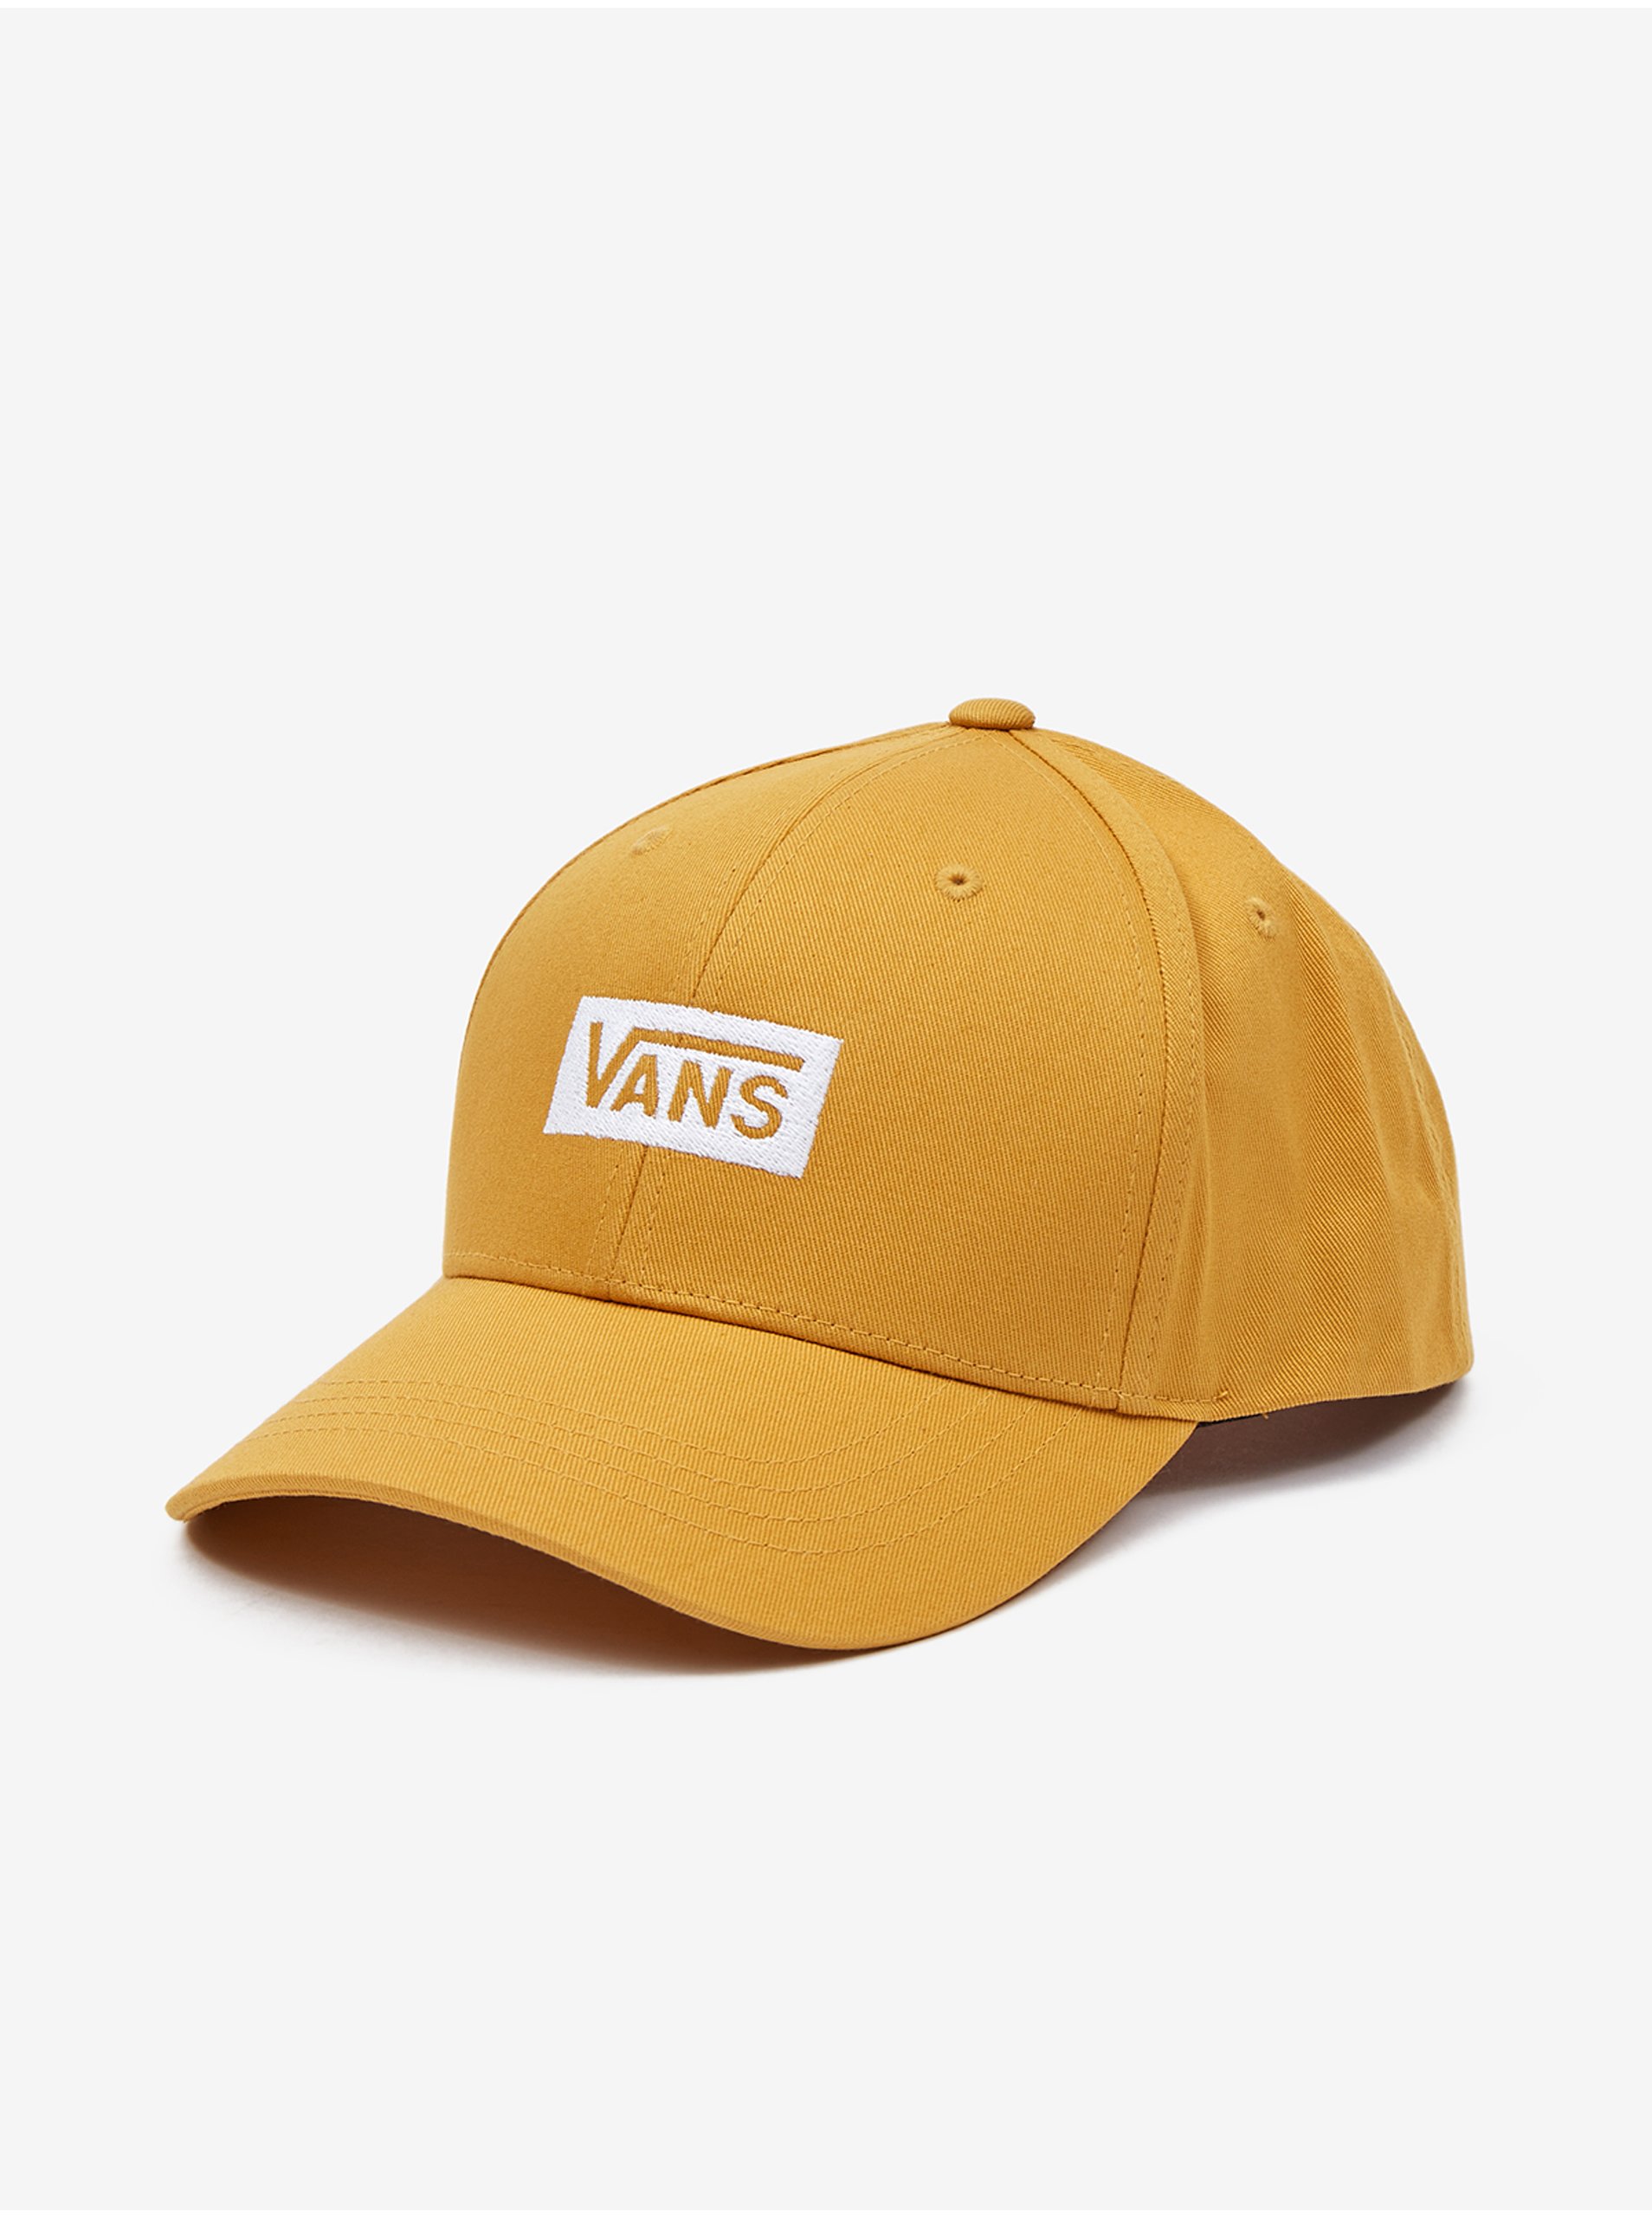 Yellow Cap VANS - Men